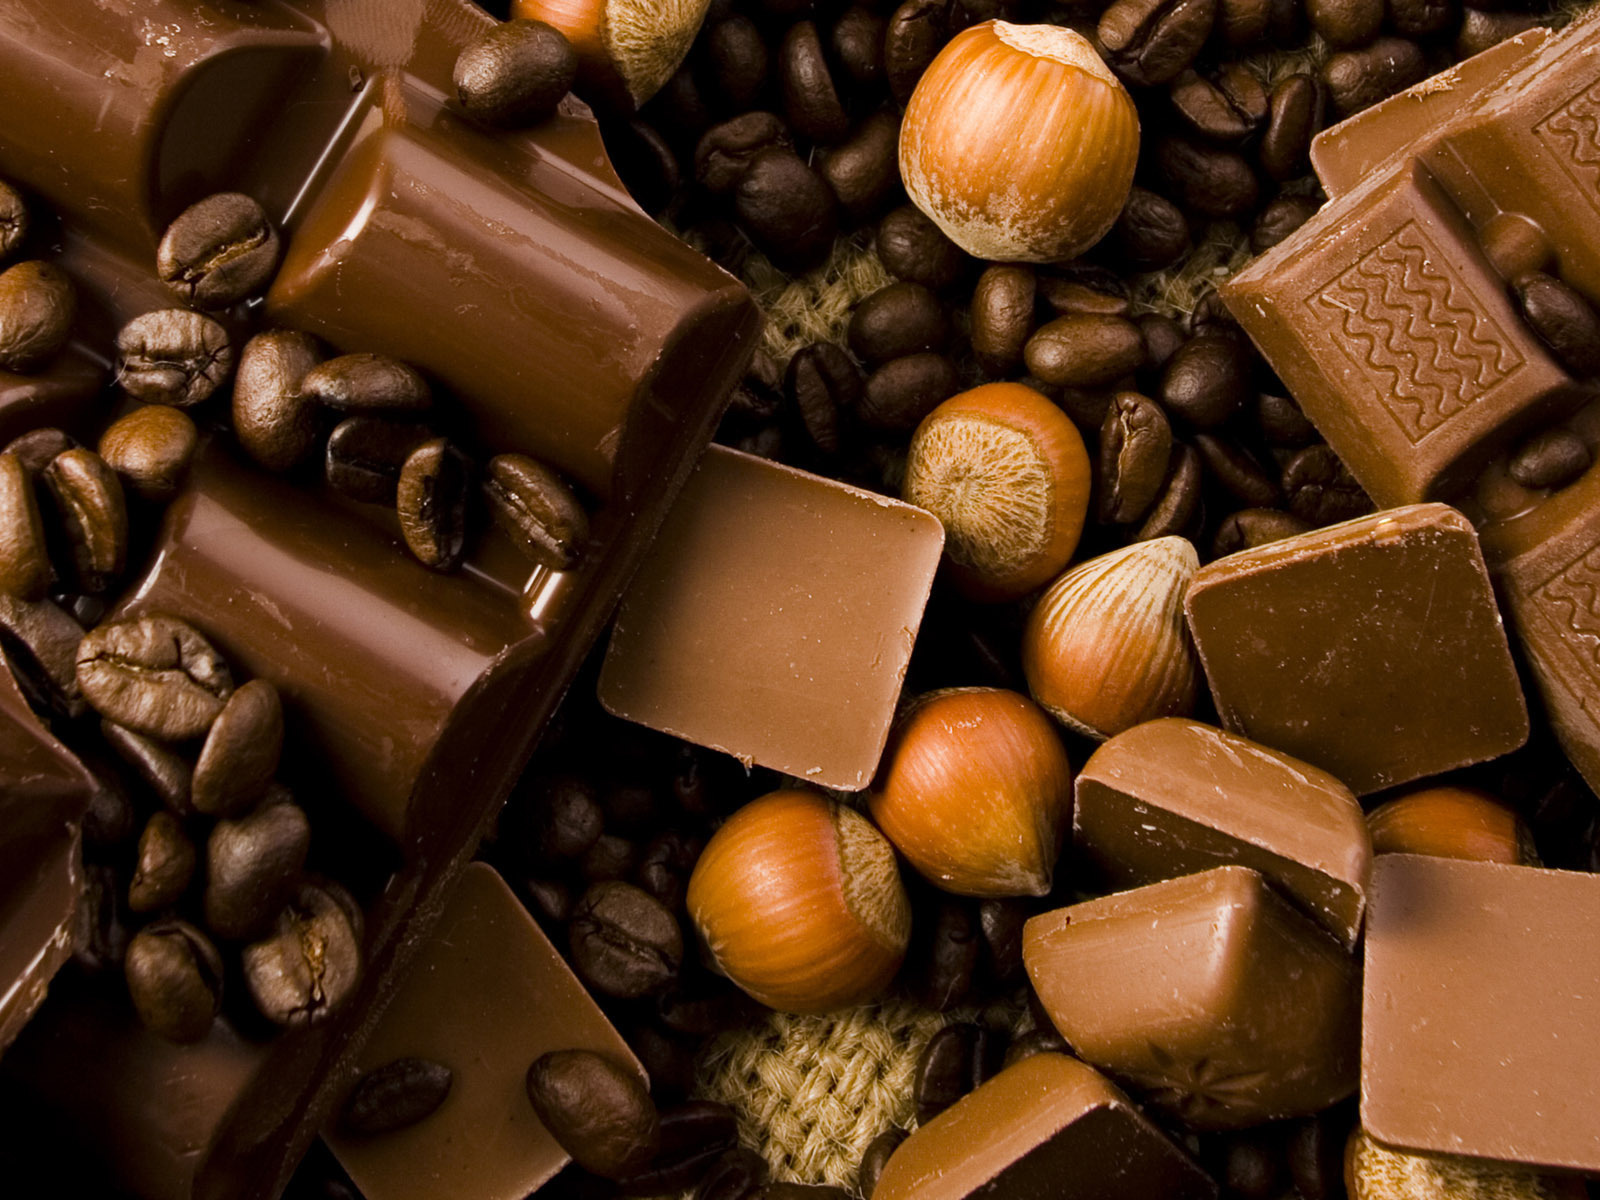 fotos de chocolate con granos de cafe para facebook Mejores fotos del ...